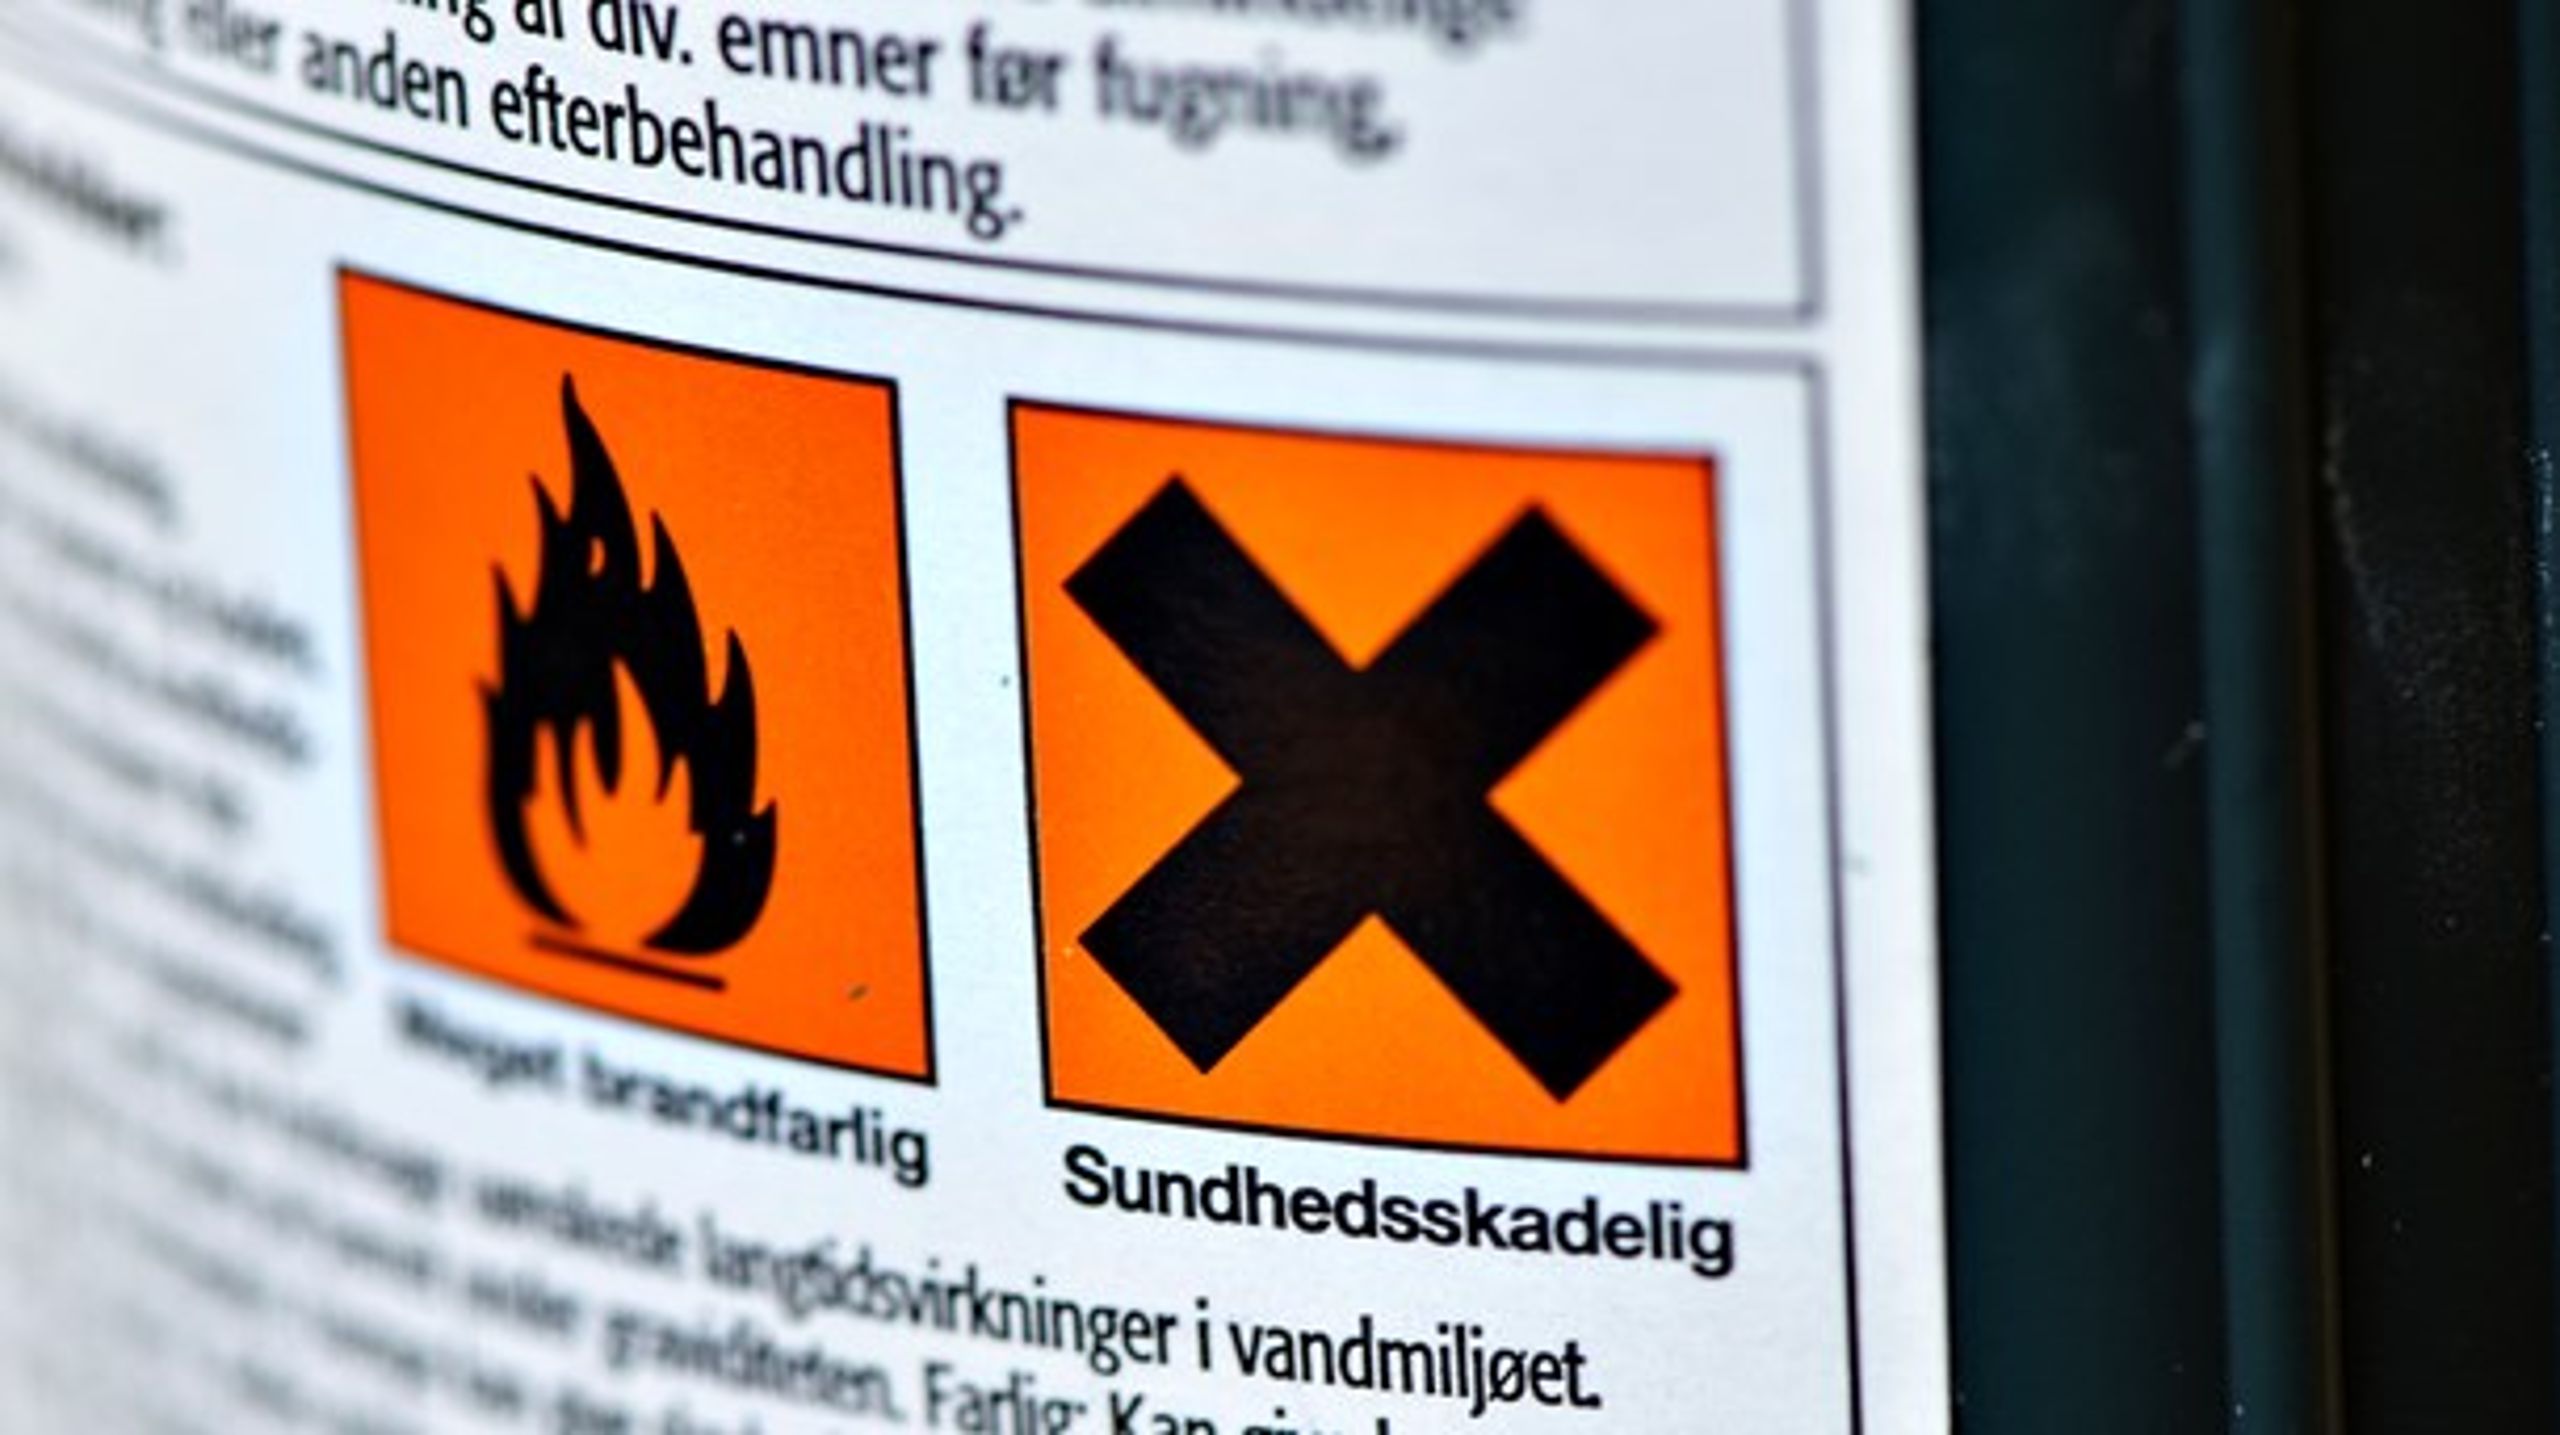 Danmarks nye kemiindsats skal blandt andet fokusere på at skabe grundlag for cirkulær økonomi, begrænse risici fra skadelig kemi og styrke kontrollen med e-handel, skriver Jakob Zeuthen.